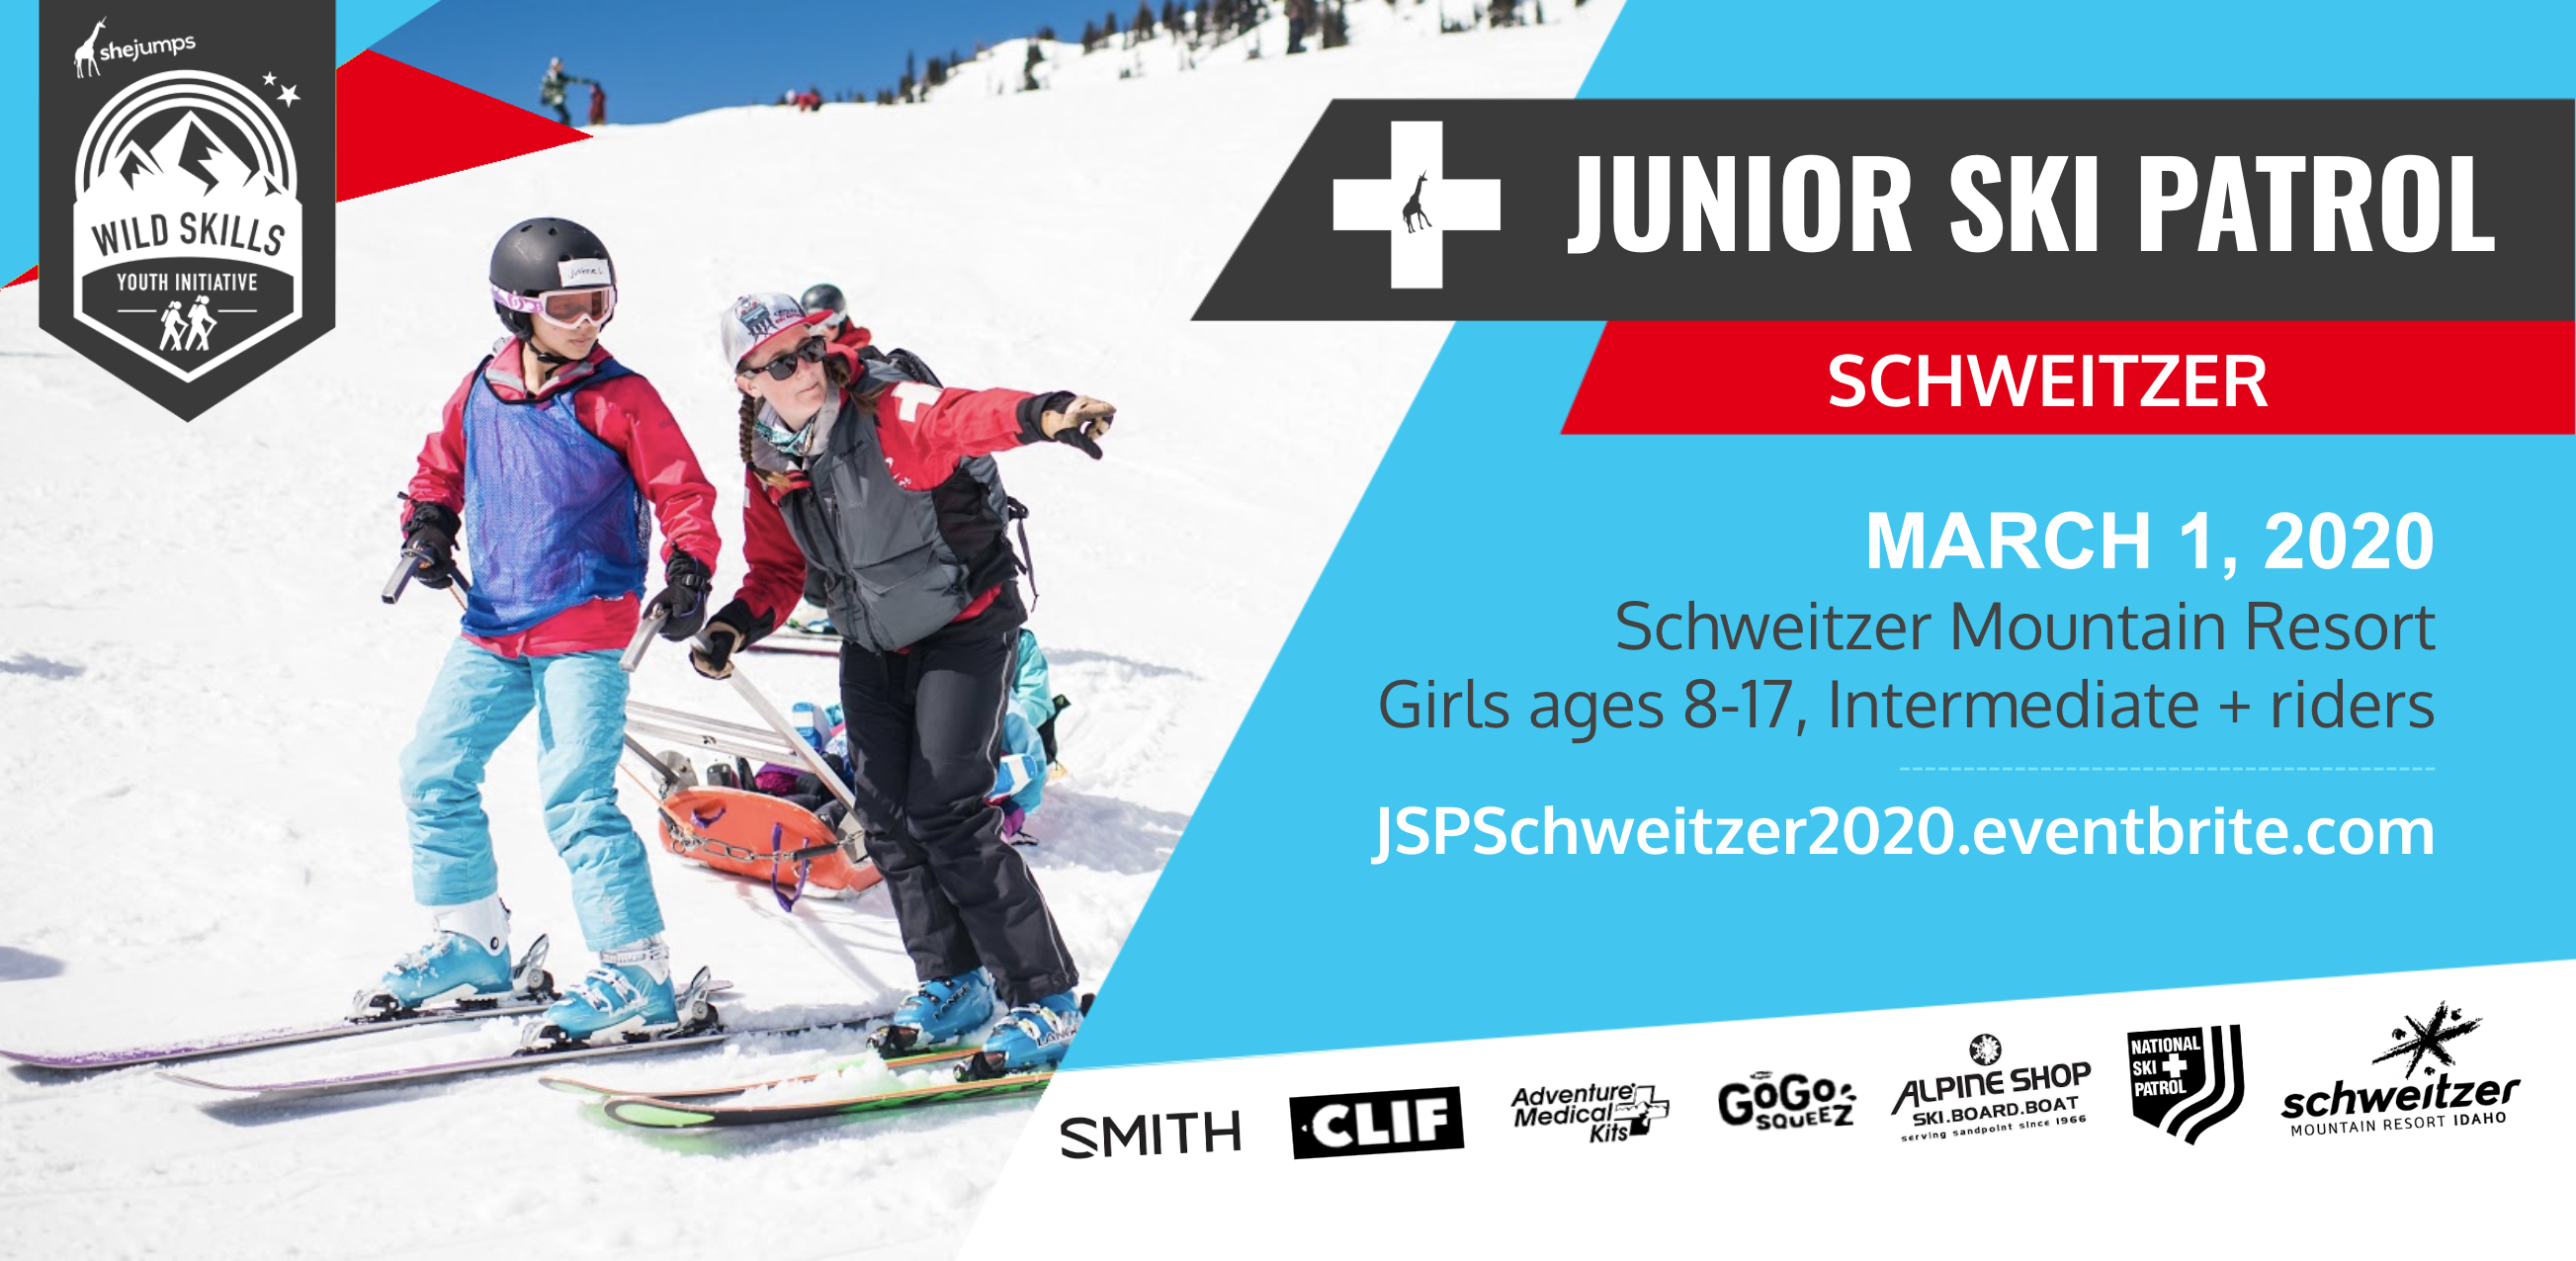 WILD SKILLS Junior Ski Patrol: Schweitzer